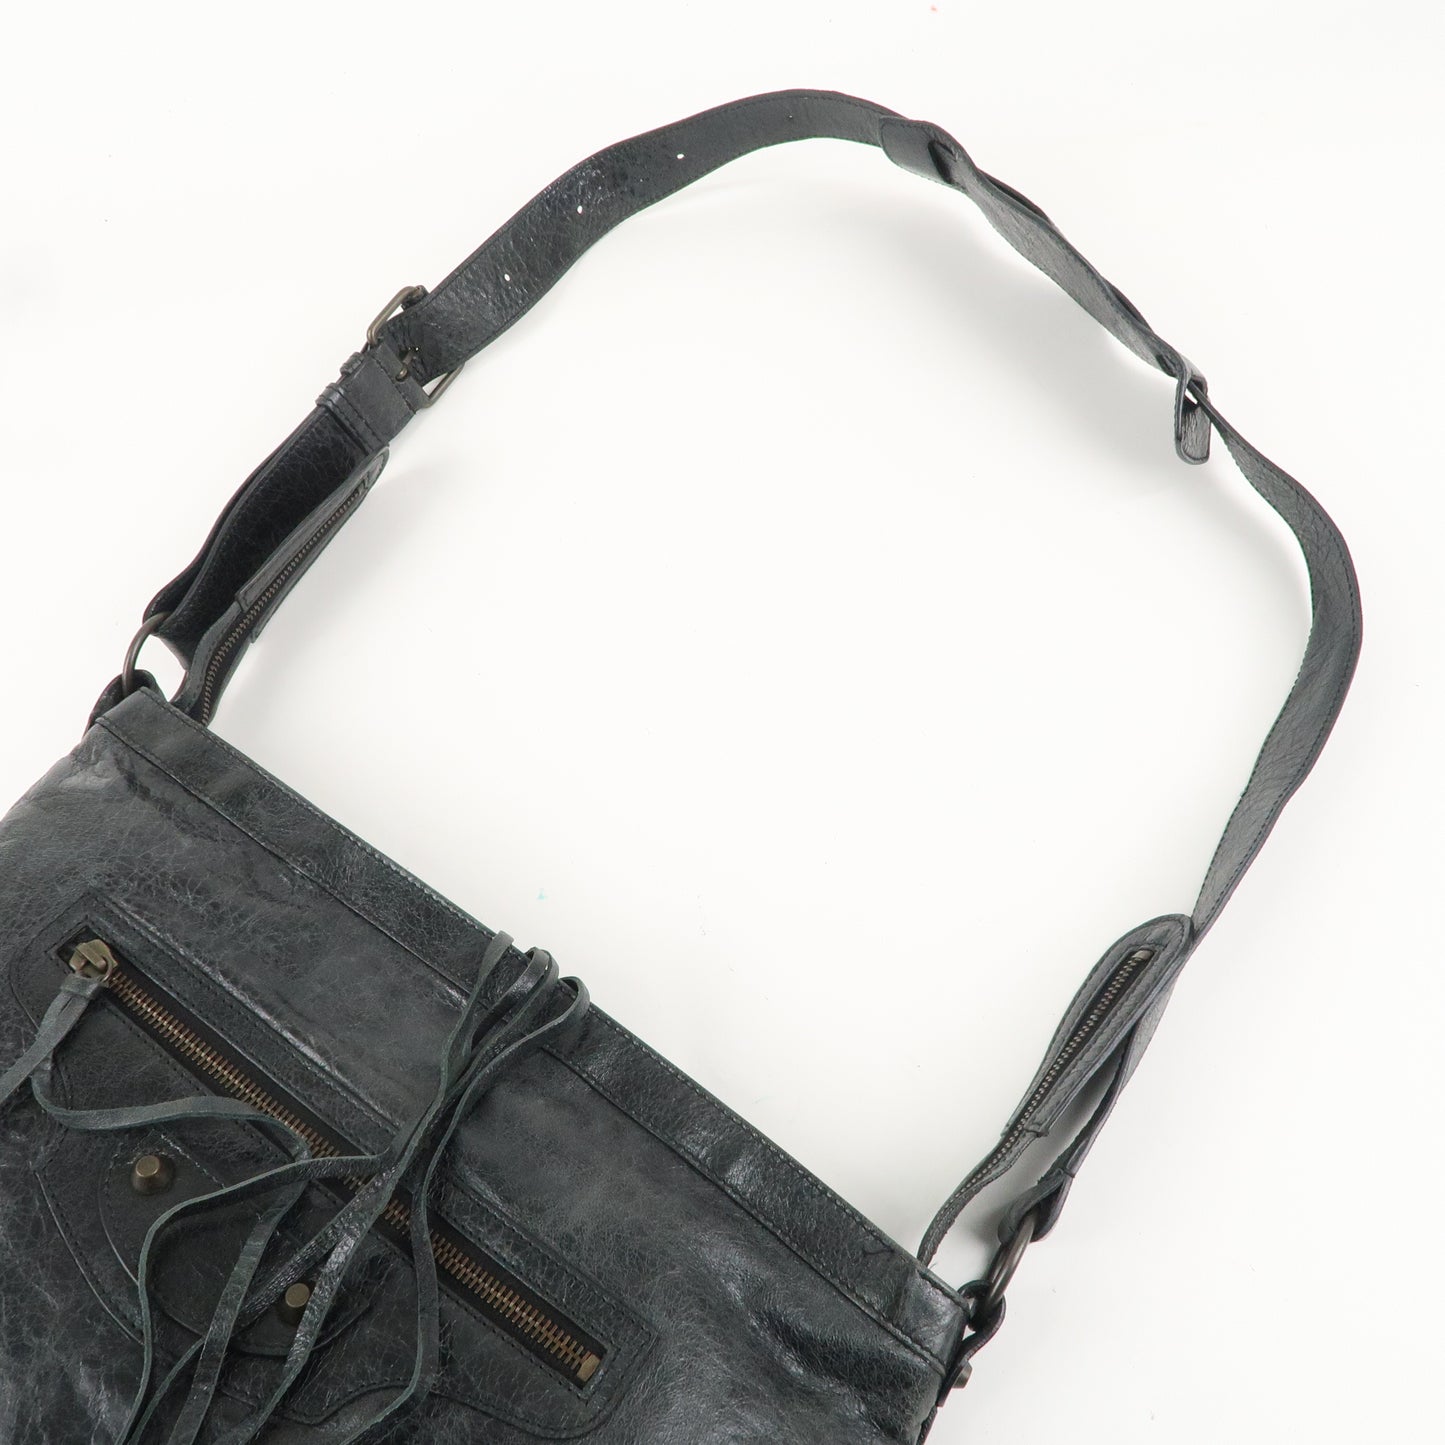 BALENCIAGA Messenger Leather Shoulder Bag Black 177289